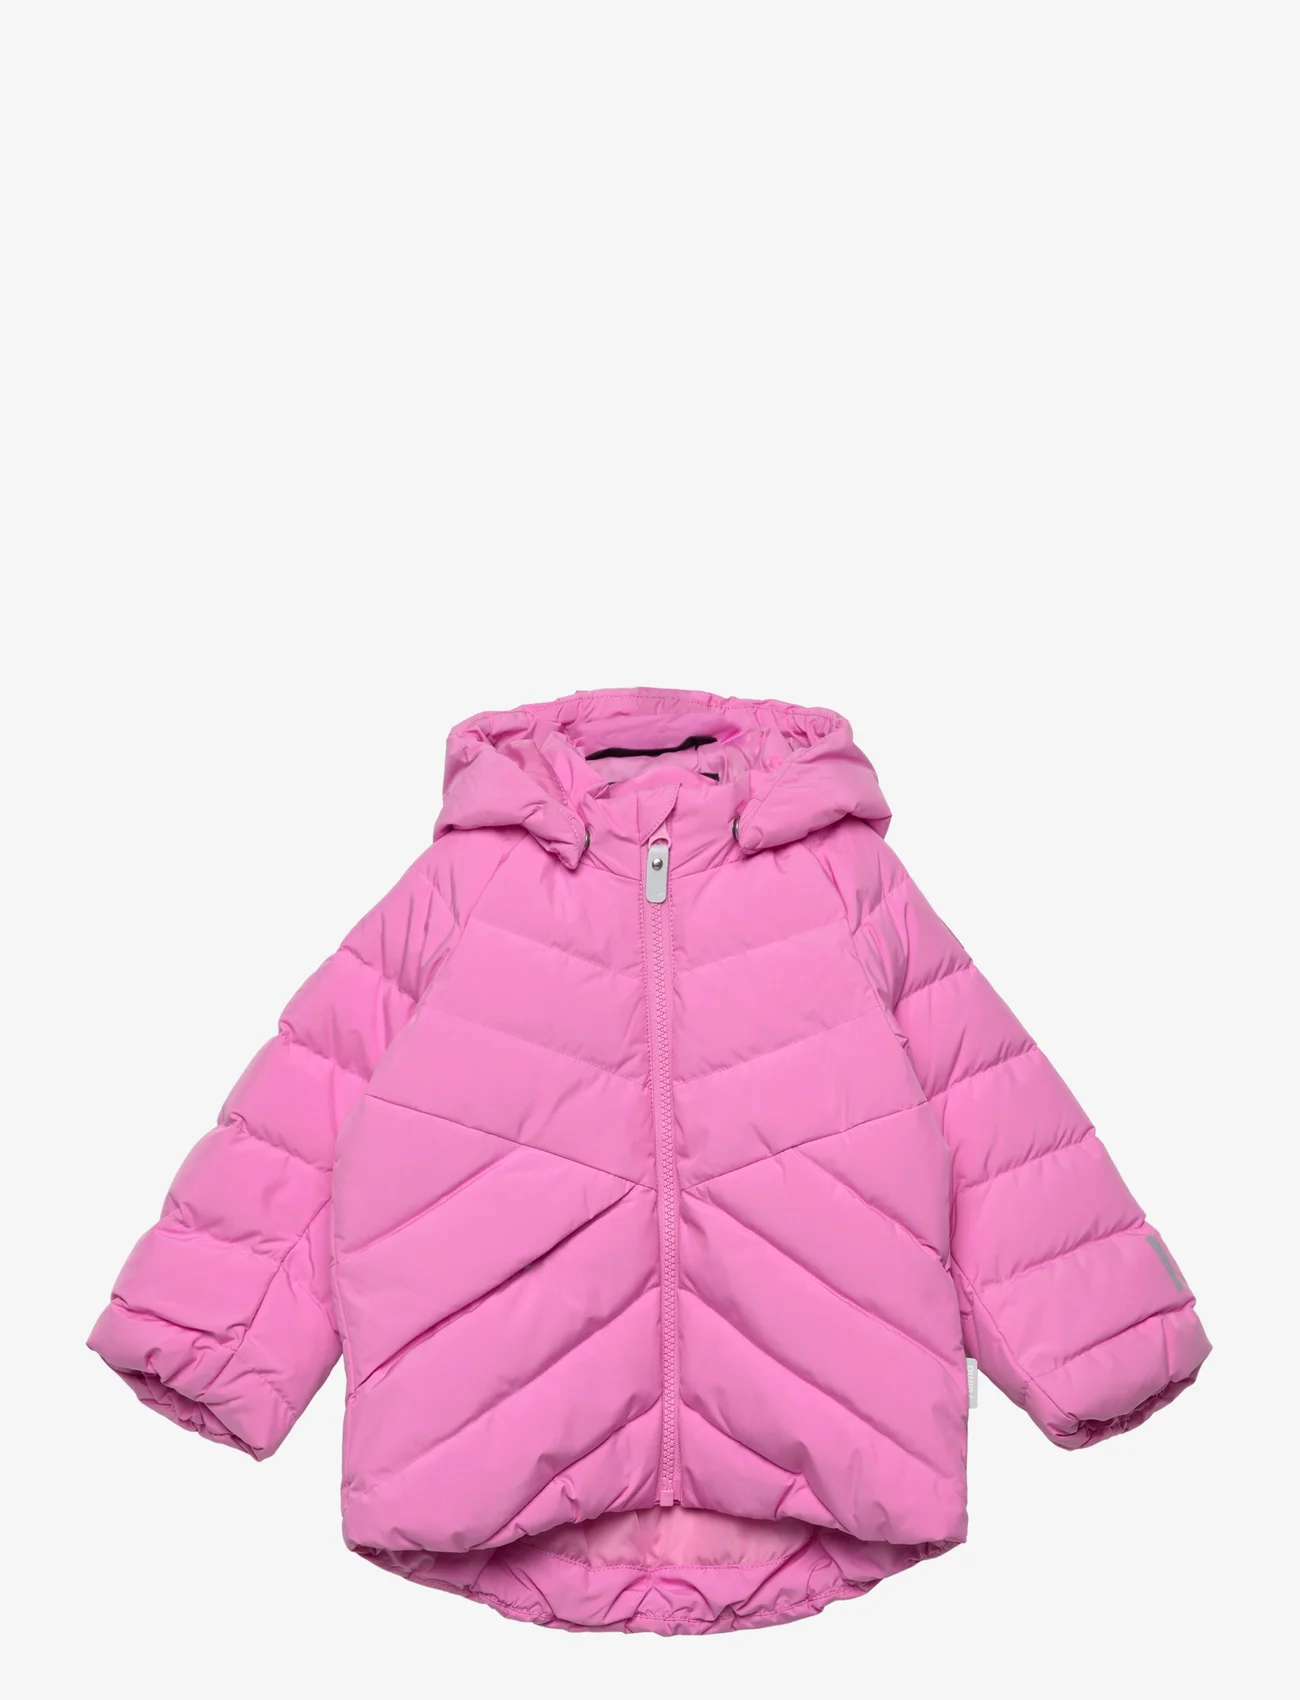 Reima - Down jacket, Kupponen - pūstosios ir paminkštintosios - cold pink - 0